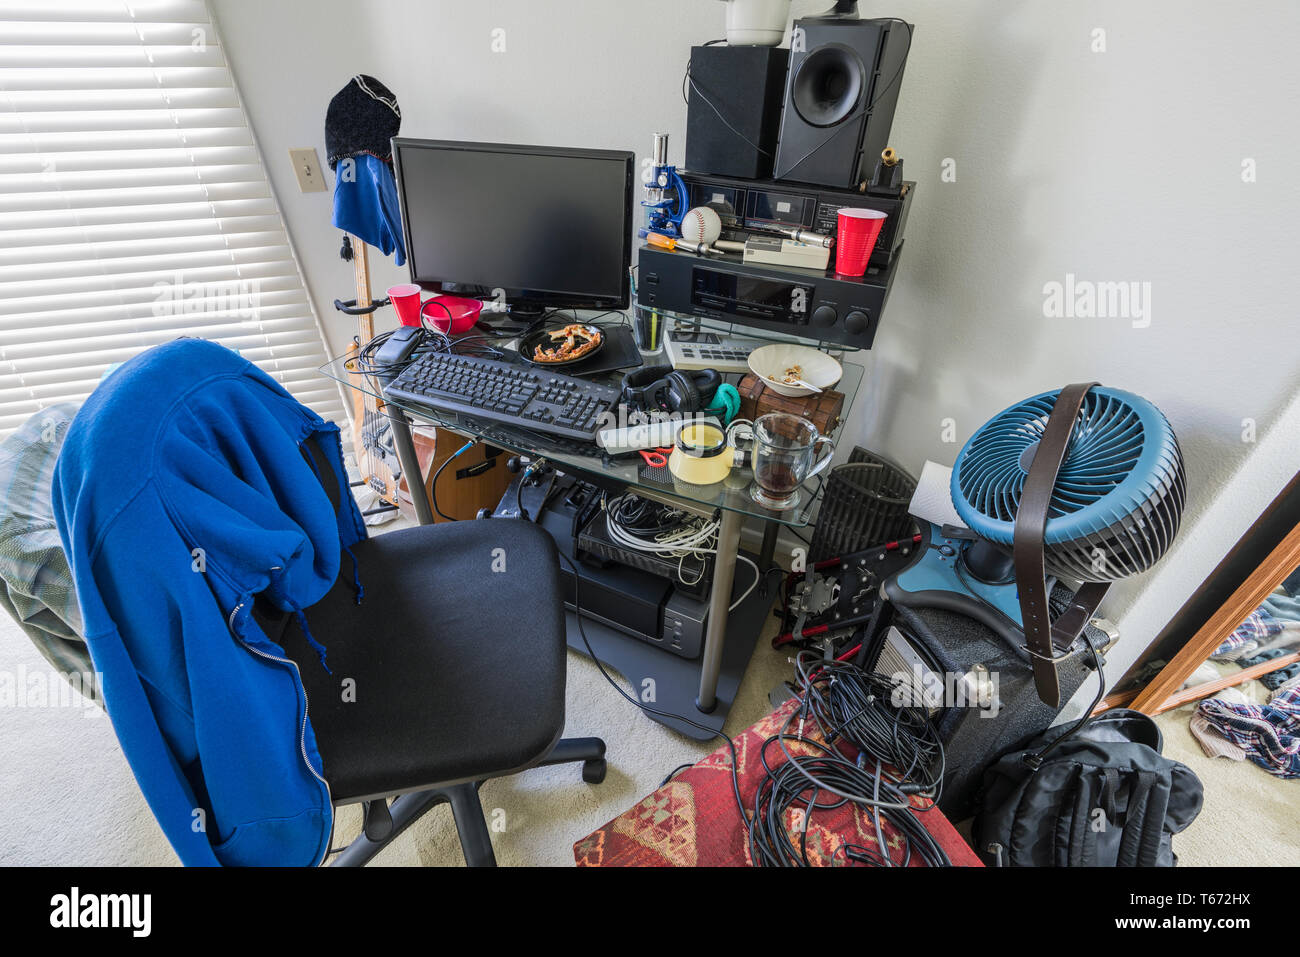 Sehr chaotisch, überladen Schreibtisch in Jungen im Teenageralter Schlafzimmer mit Musik-, Elektronik- und Sportgeräte. Stockfoto